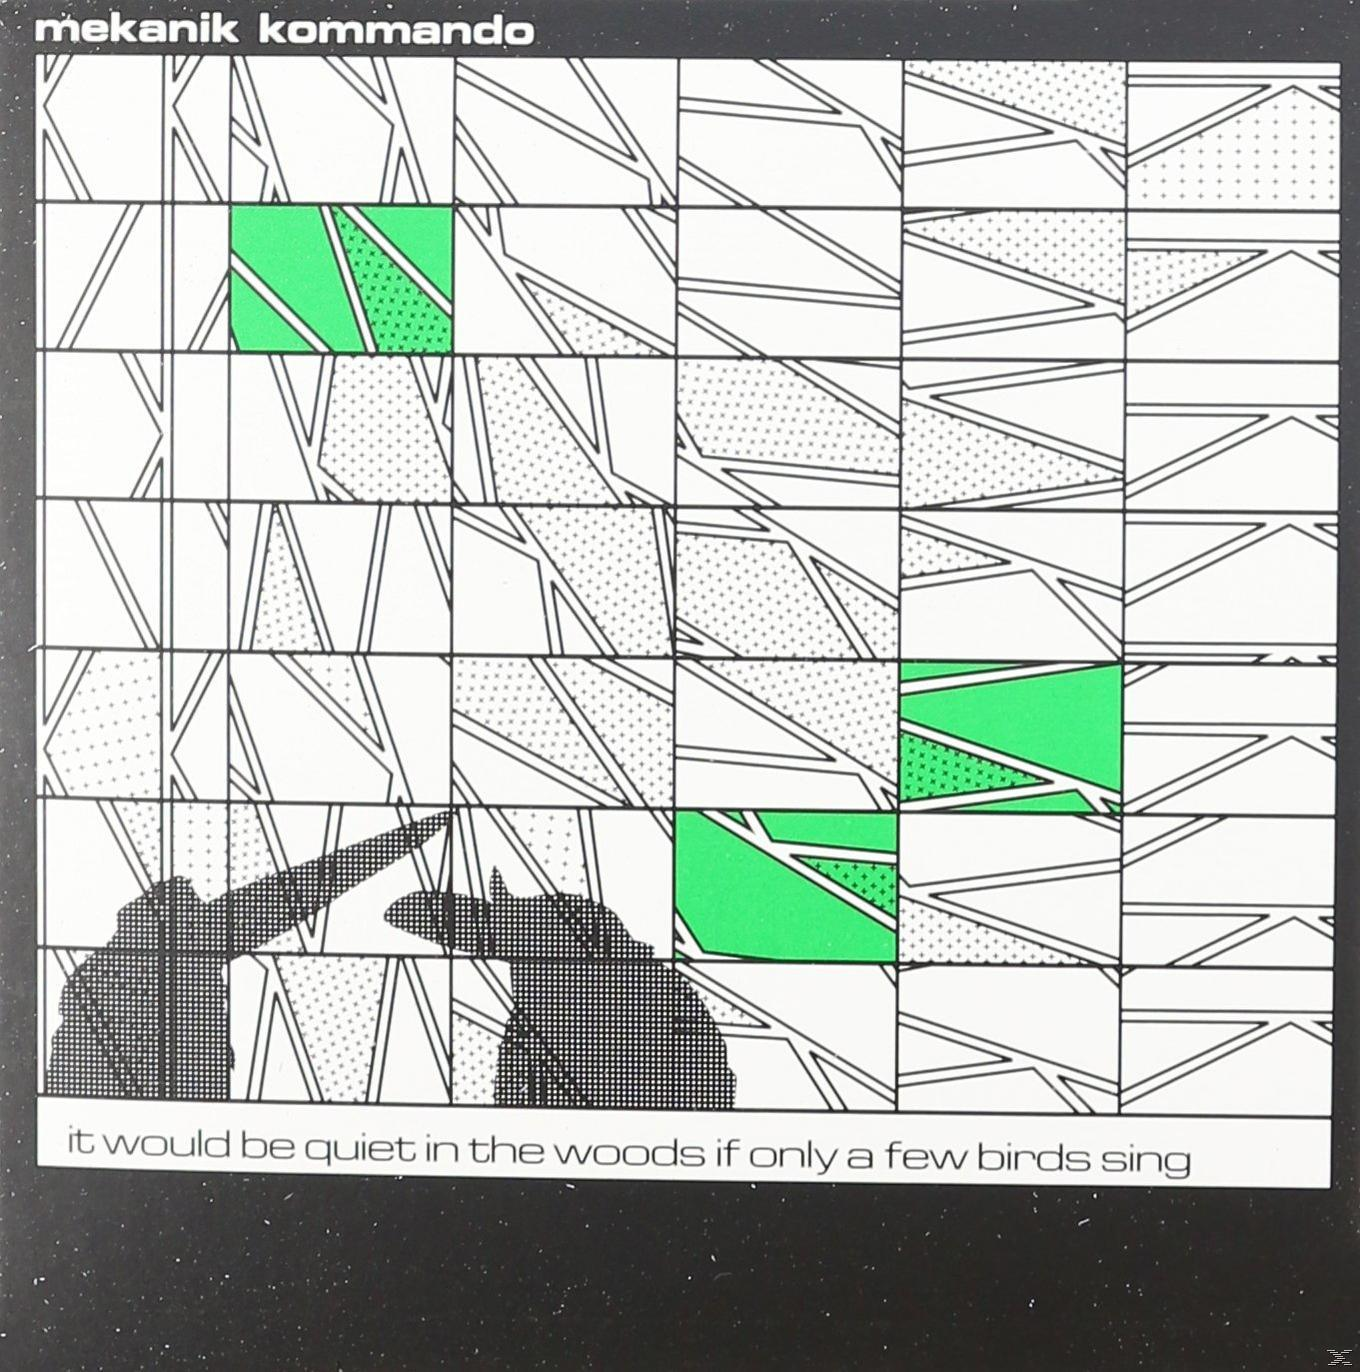 Mekanik Kommando - - Be Few Birds It Sing The Would If Only (CD) A Woods